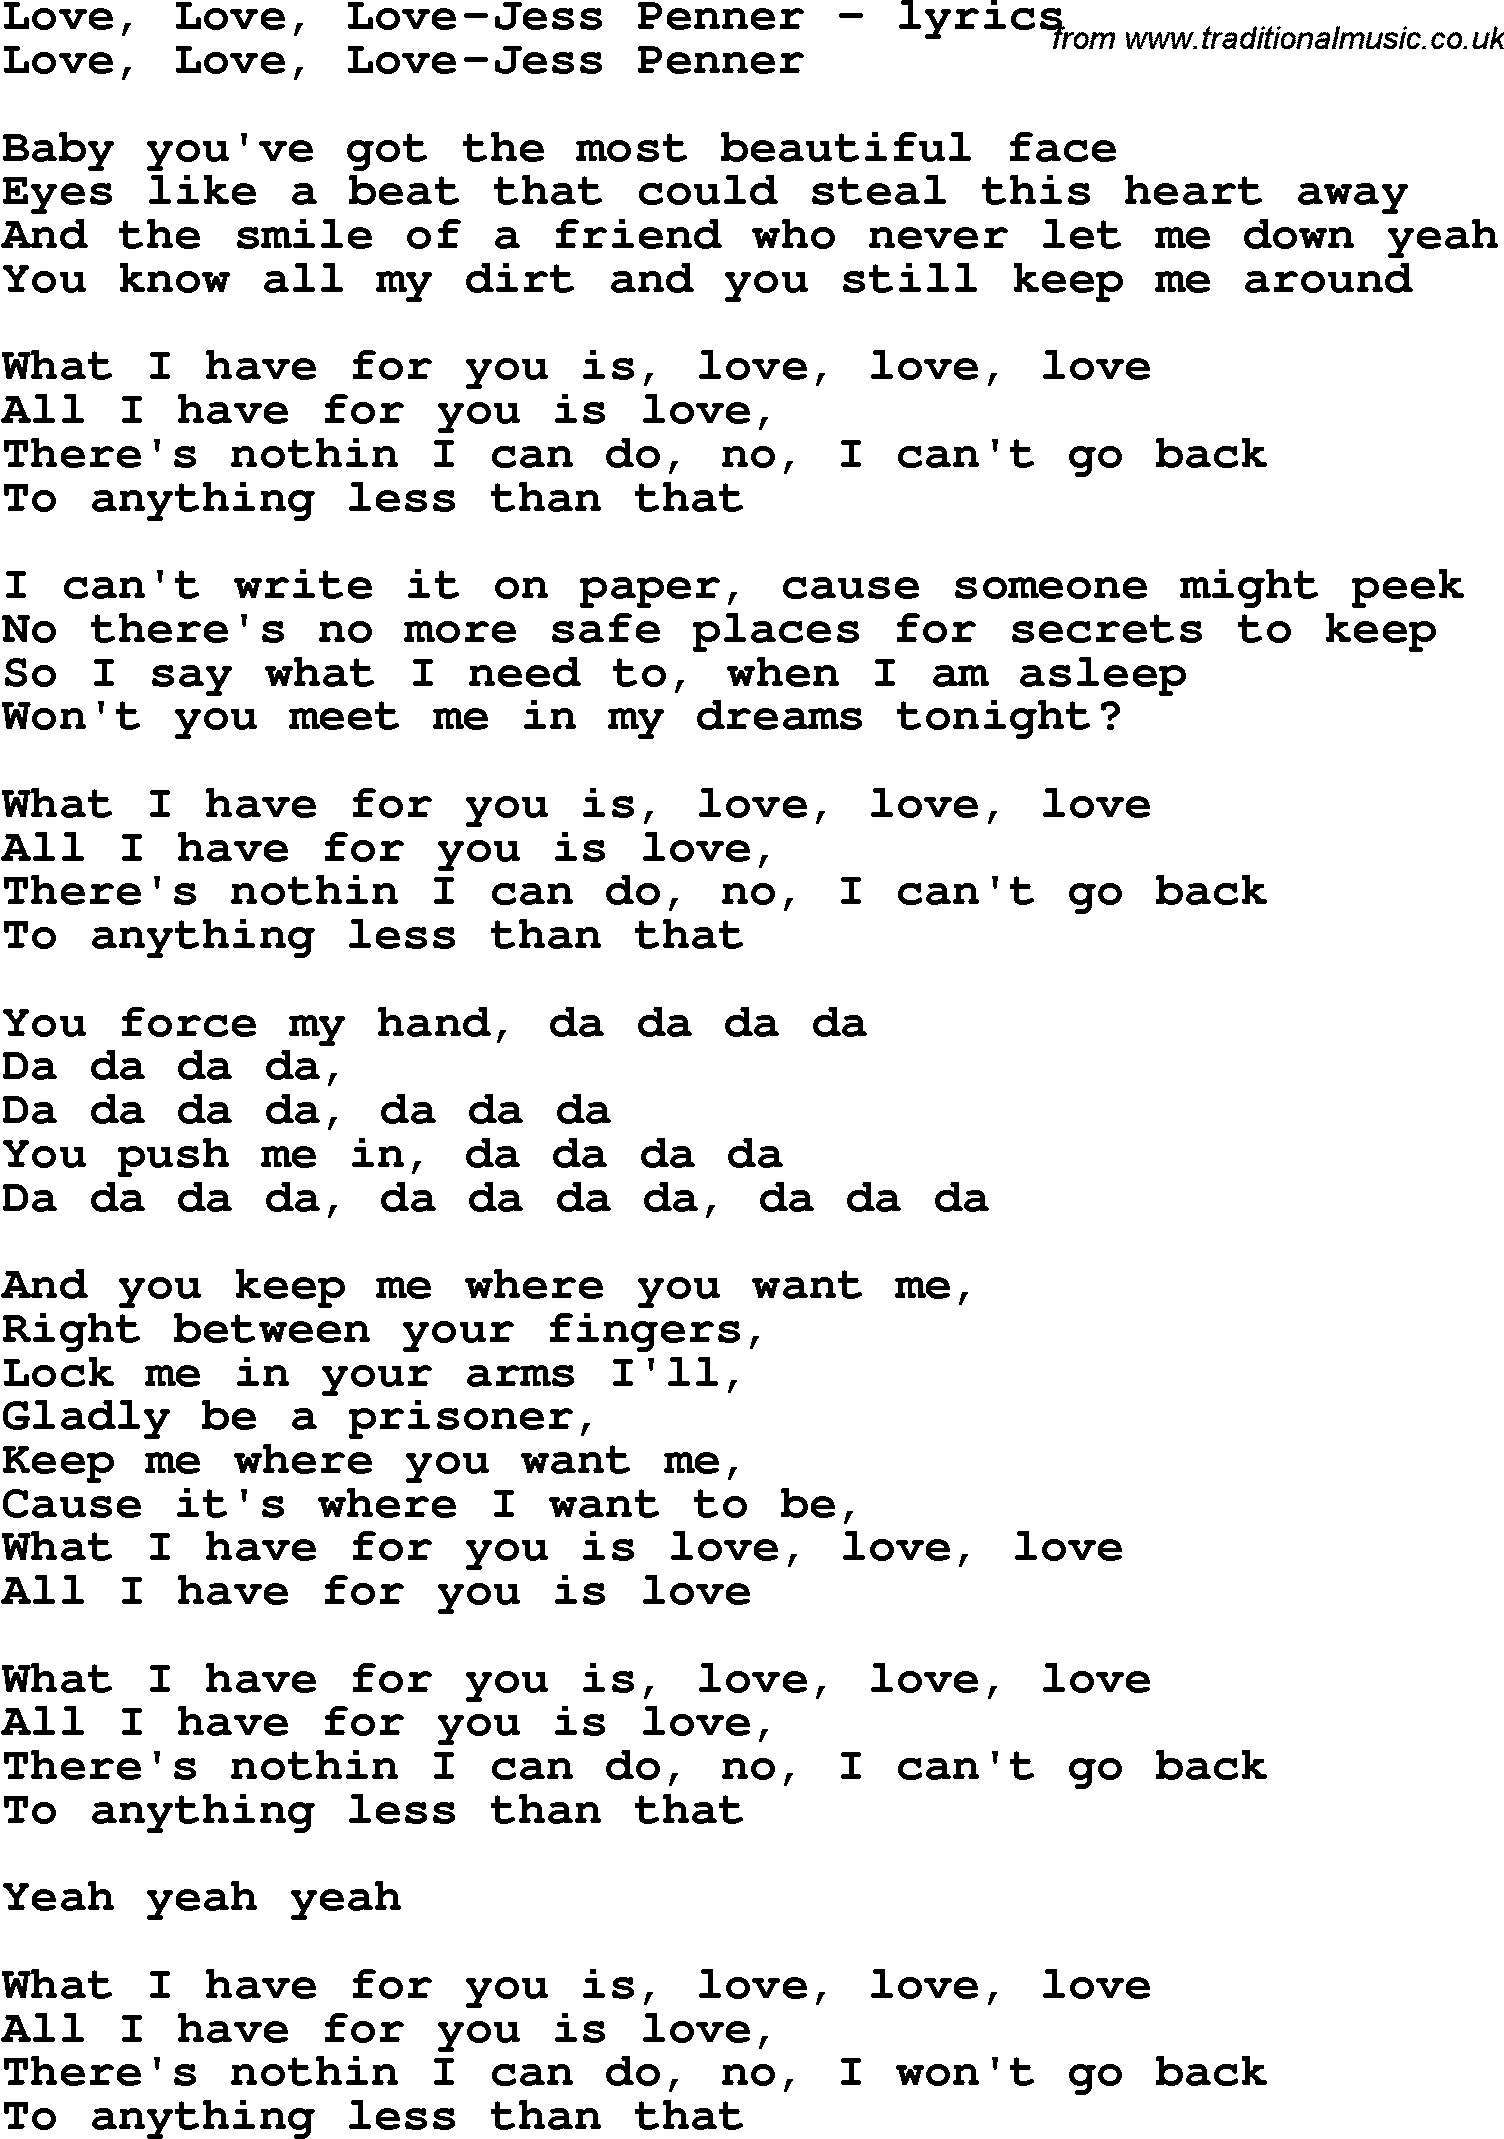 Love Song Lyrics for: Love, Love, Love-Jess Penner